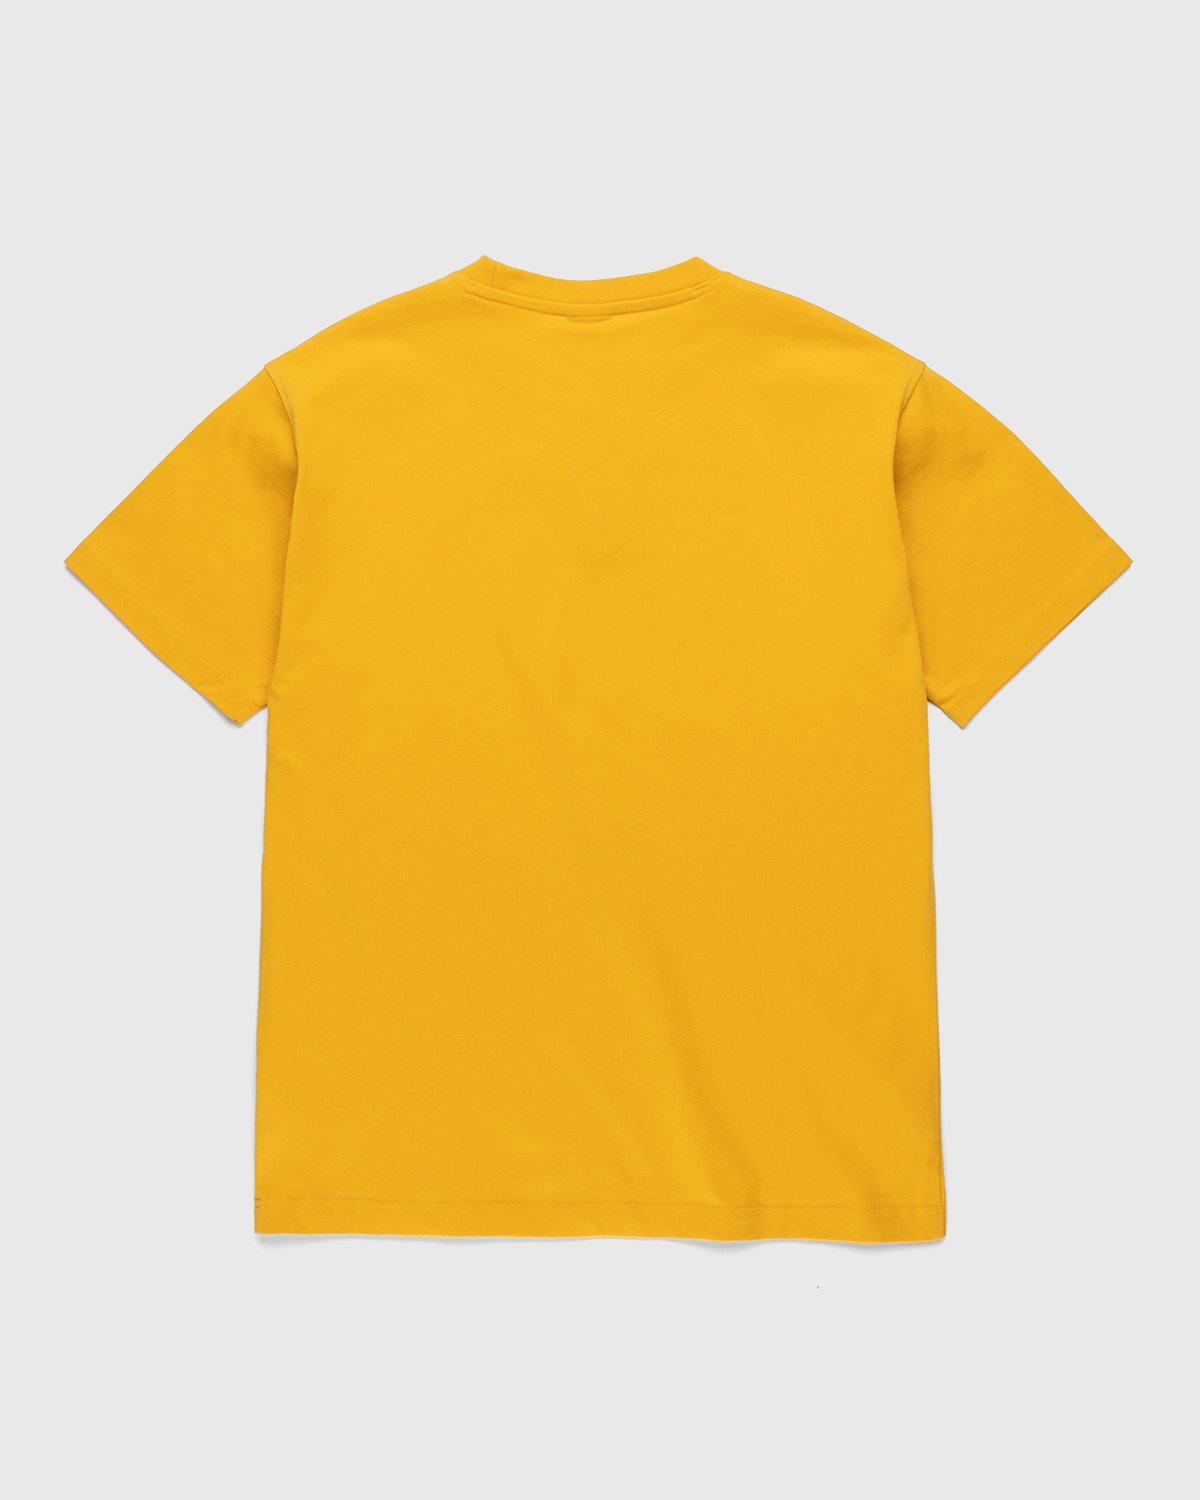 New Balance - Conversations Amongst Us T-Shirt Aspen Yellow - Clothing - Yellow - Image 2